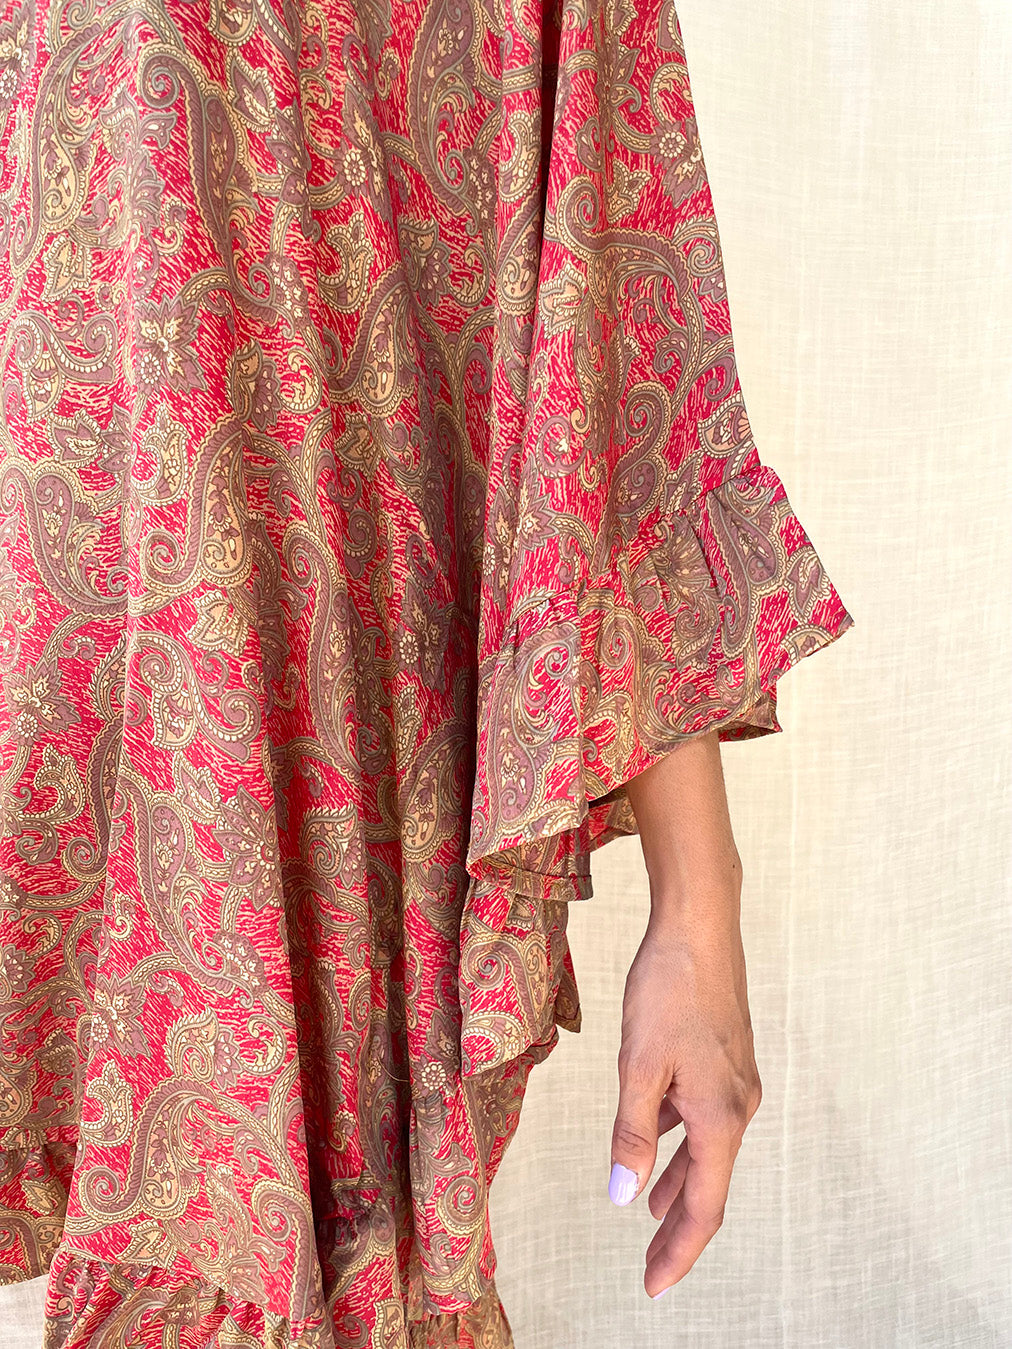 Silk Flower Short Dress - Sample n.64